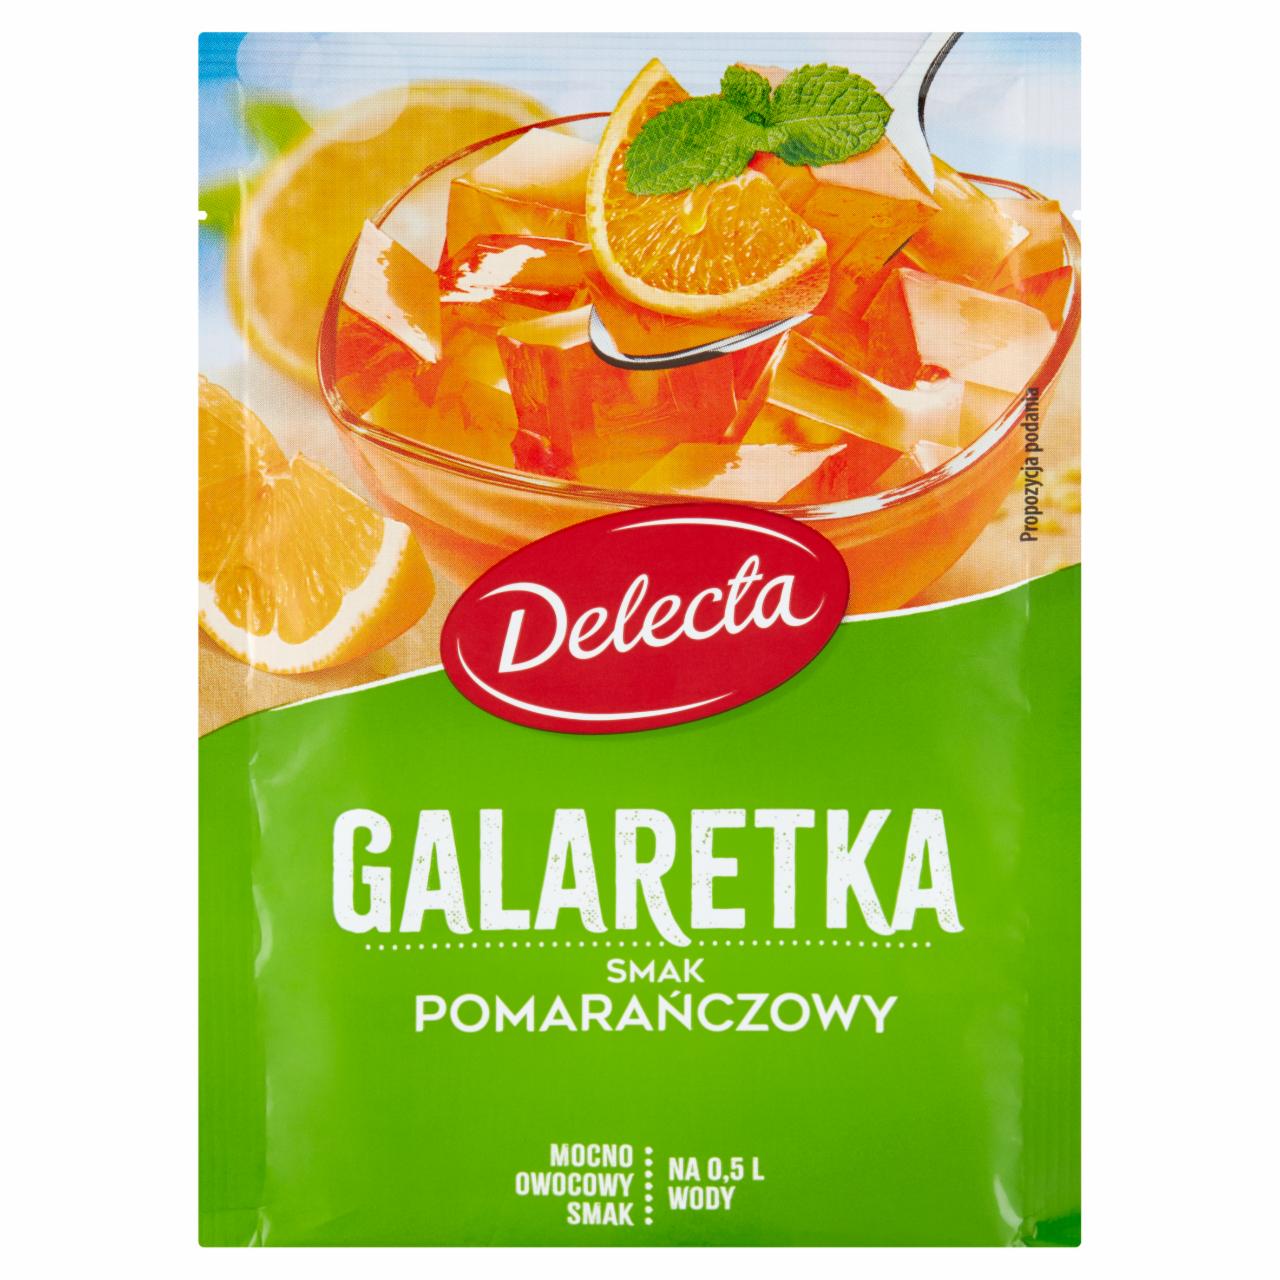 Zdjęcia - Delecta Galaretka smak pomarańczowy 70 g